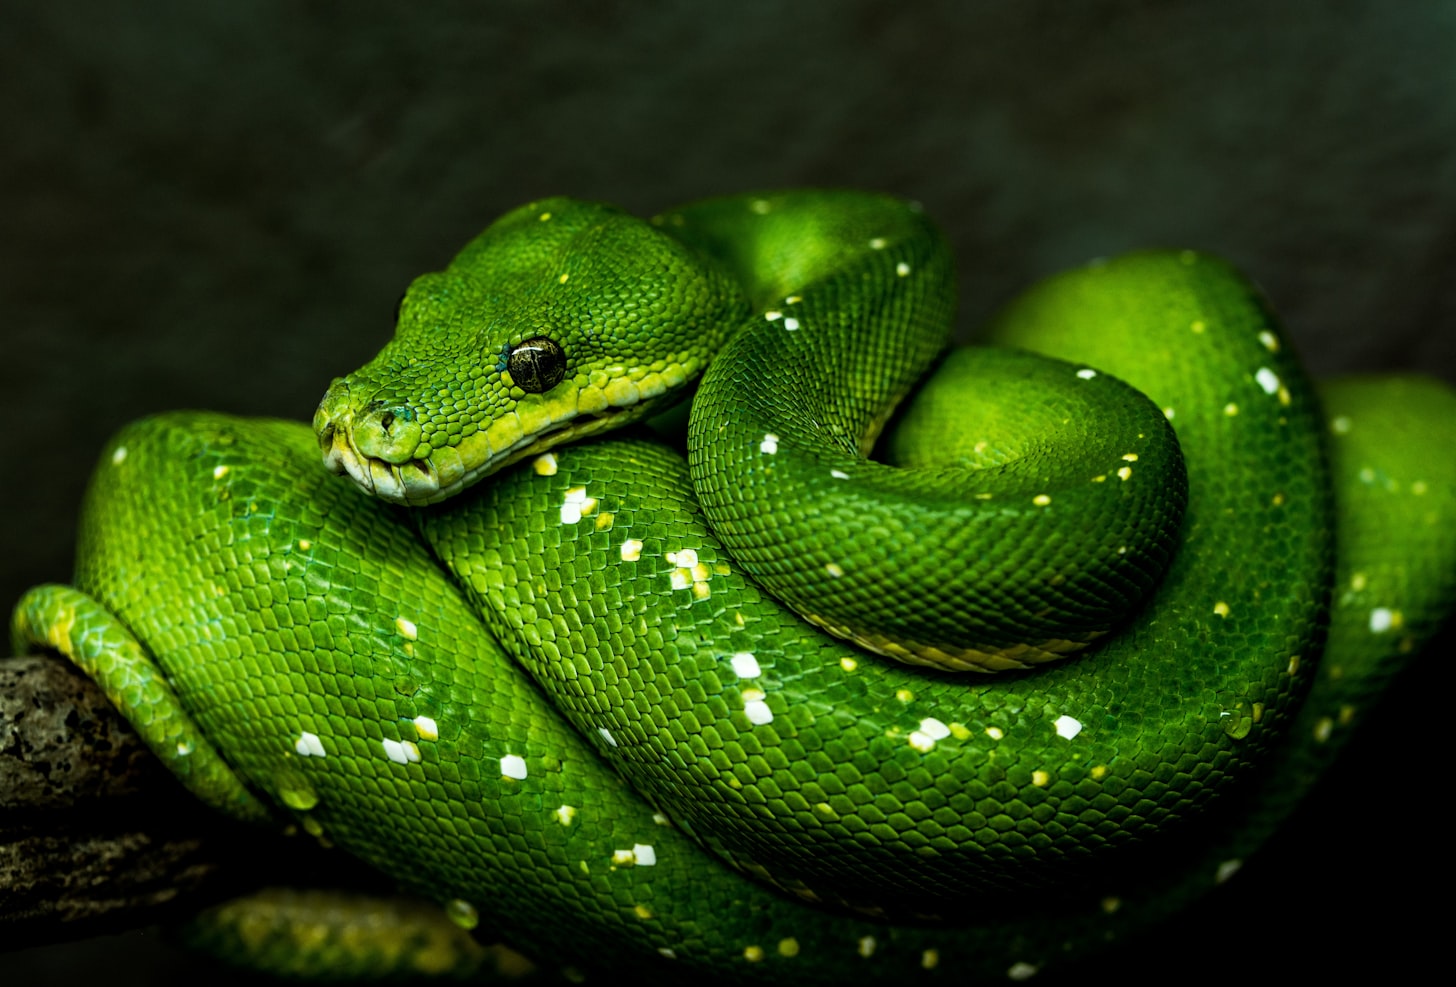 The World's Longest Snake is Over 30 Feet Long